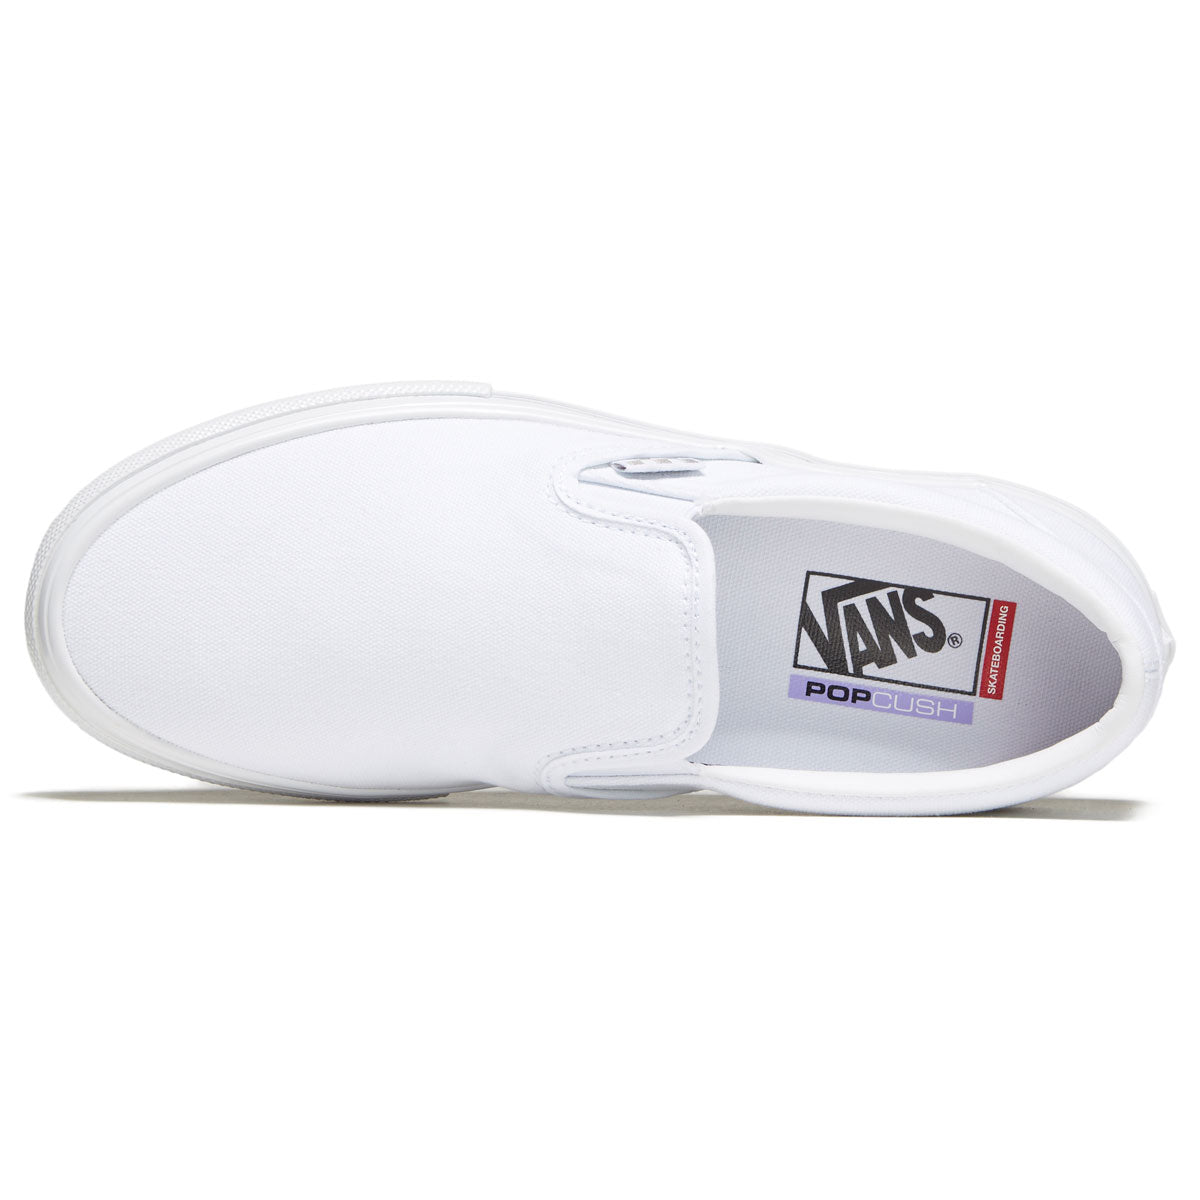 Vans Skate Slip-on Shoes - True White image 3